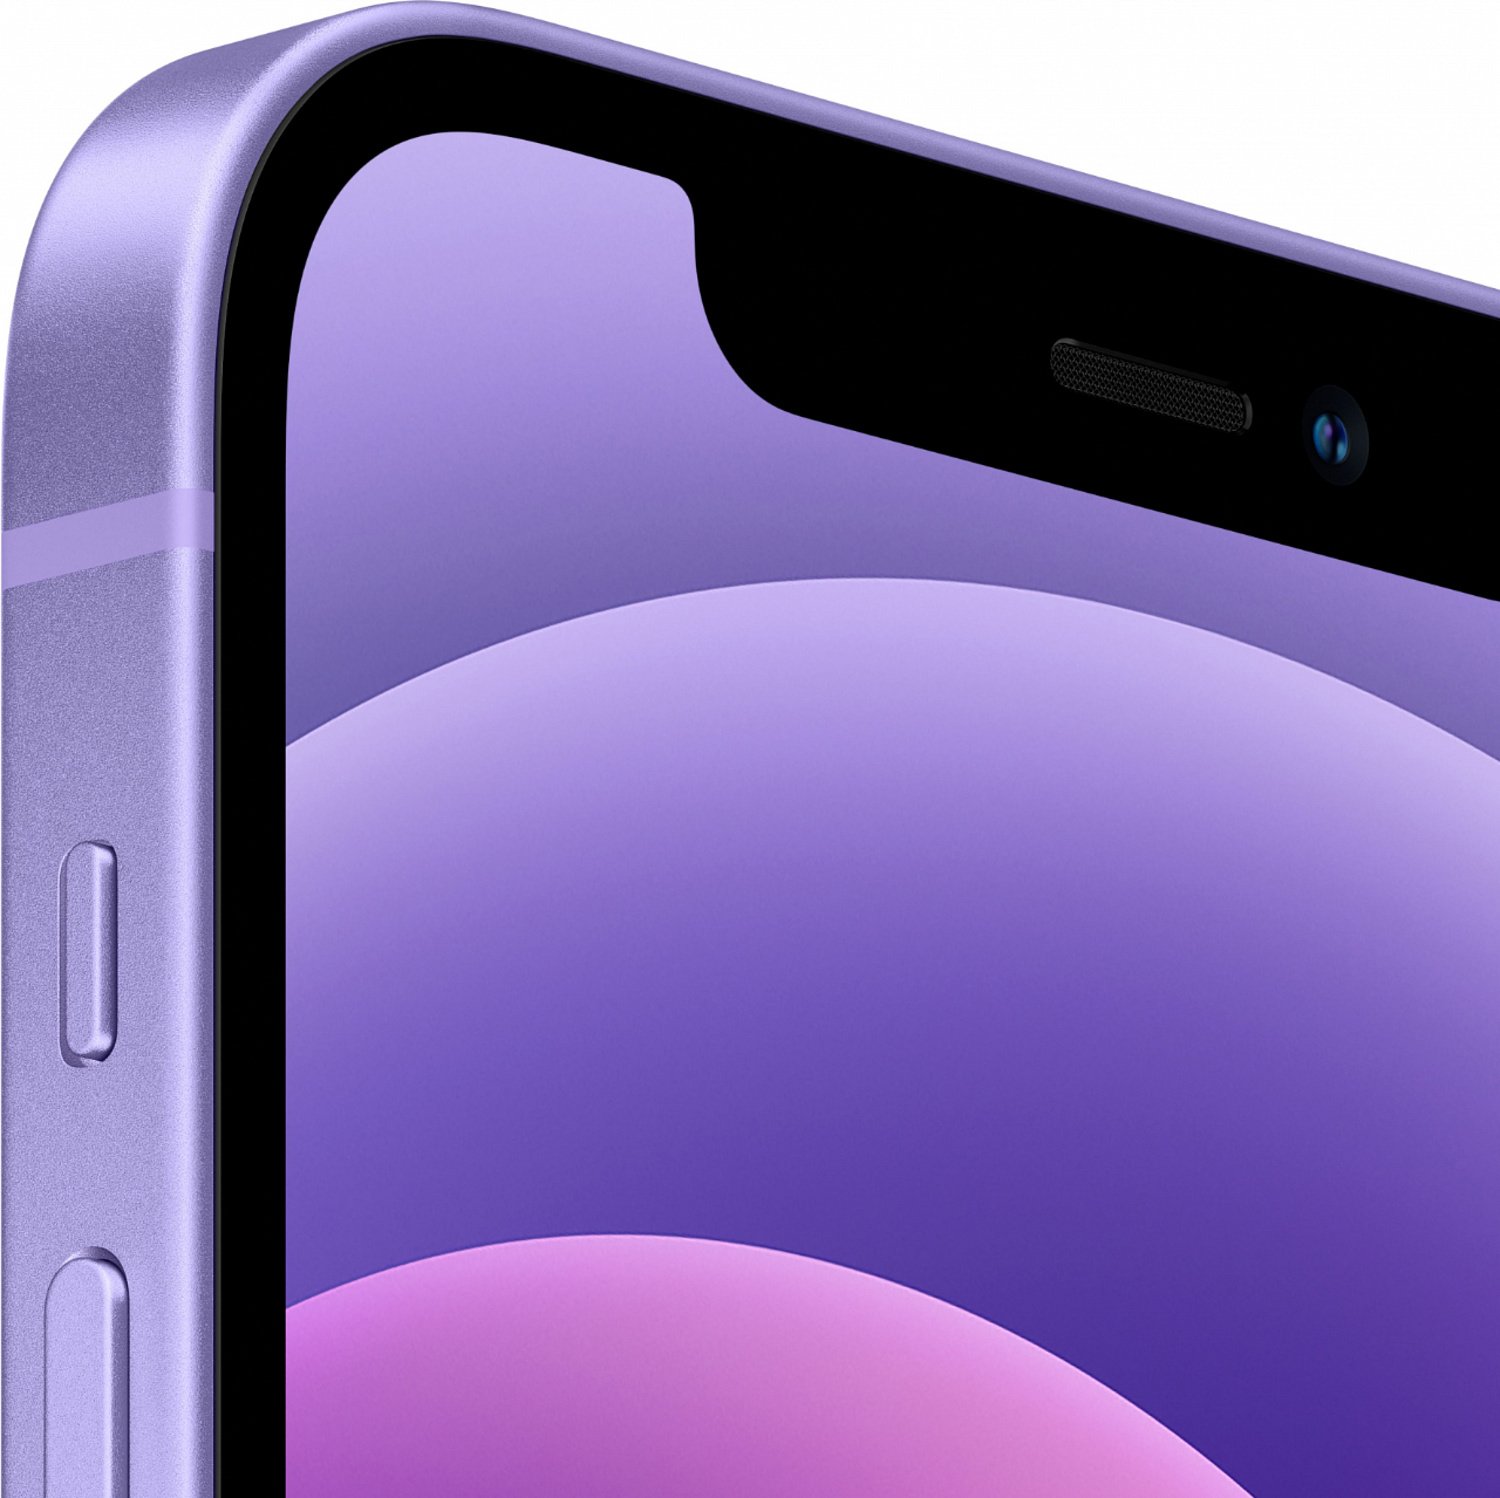 Apple iPhone 12 256GB Purple (MJNQ3) - ITMag